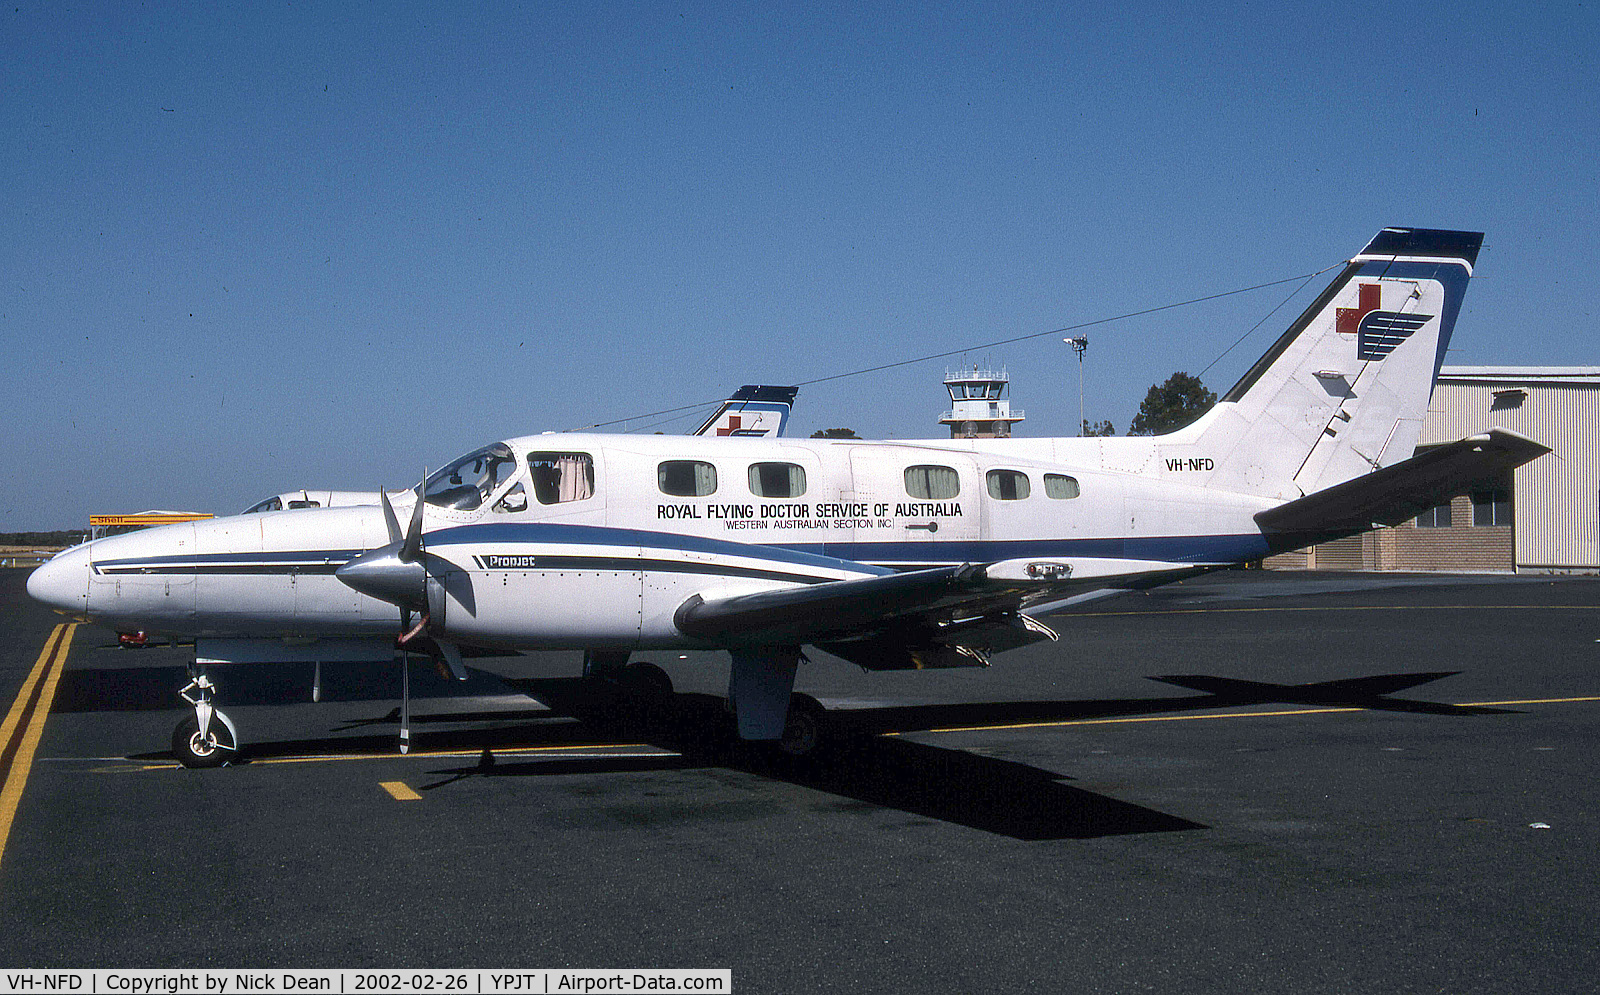 VH-NFD, 1980 Cessna 441 Conquest II C/N 441-0159, YPJT